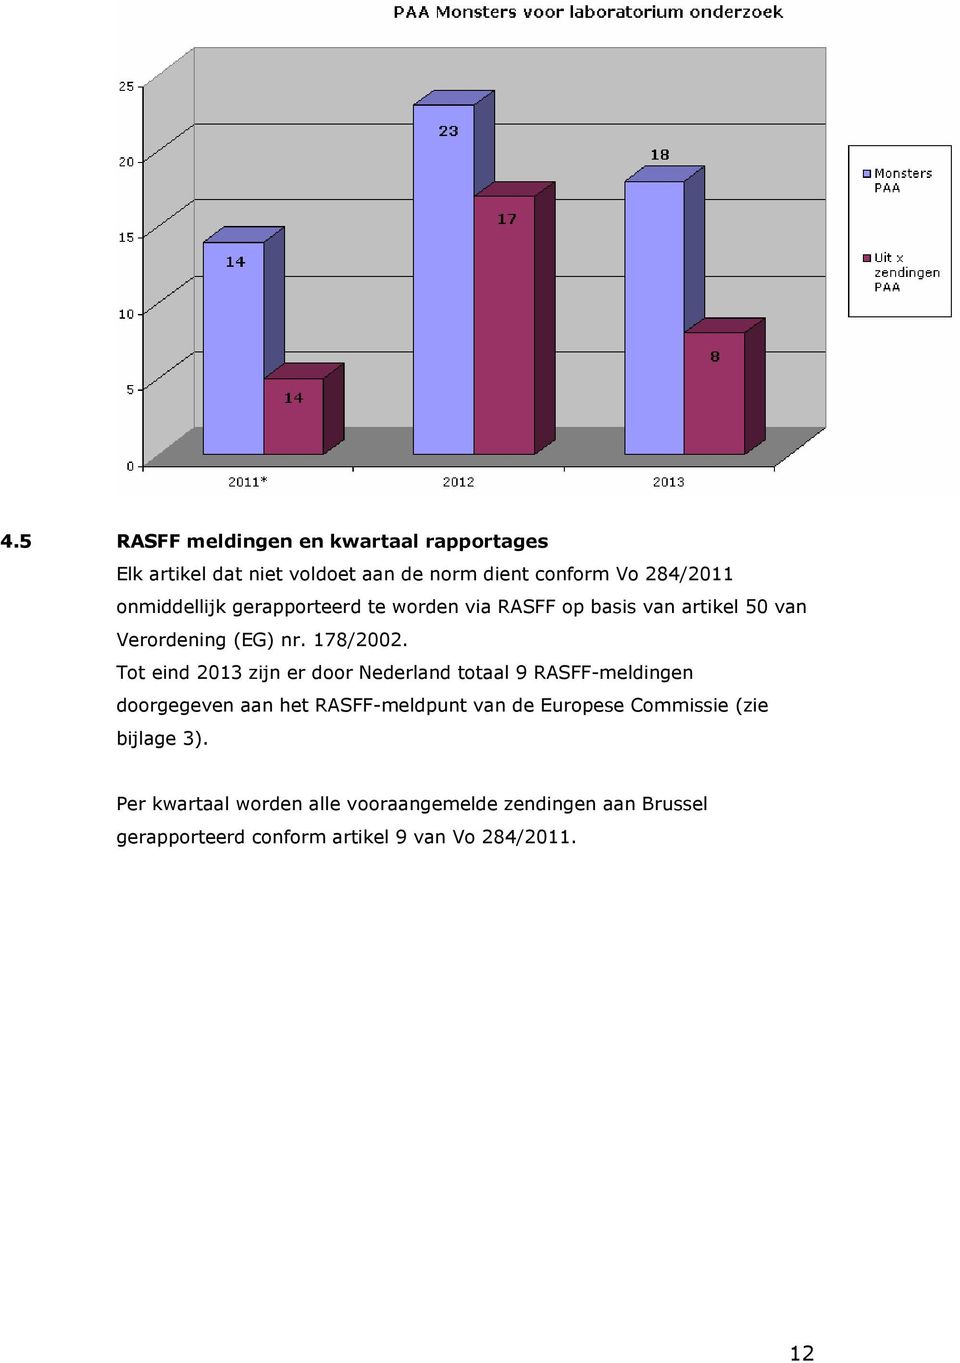 Tot eind 2013 zijn er door Nederland totaal 9 RASFF-meldingen doorgegeven aan het RASFF-meldpunt van de Europese